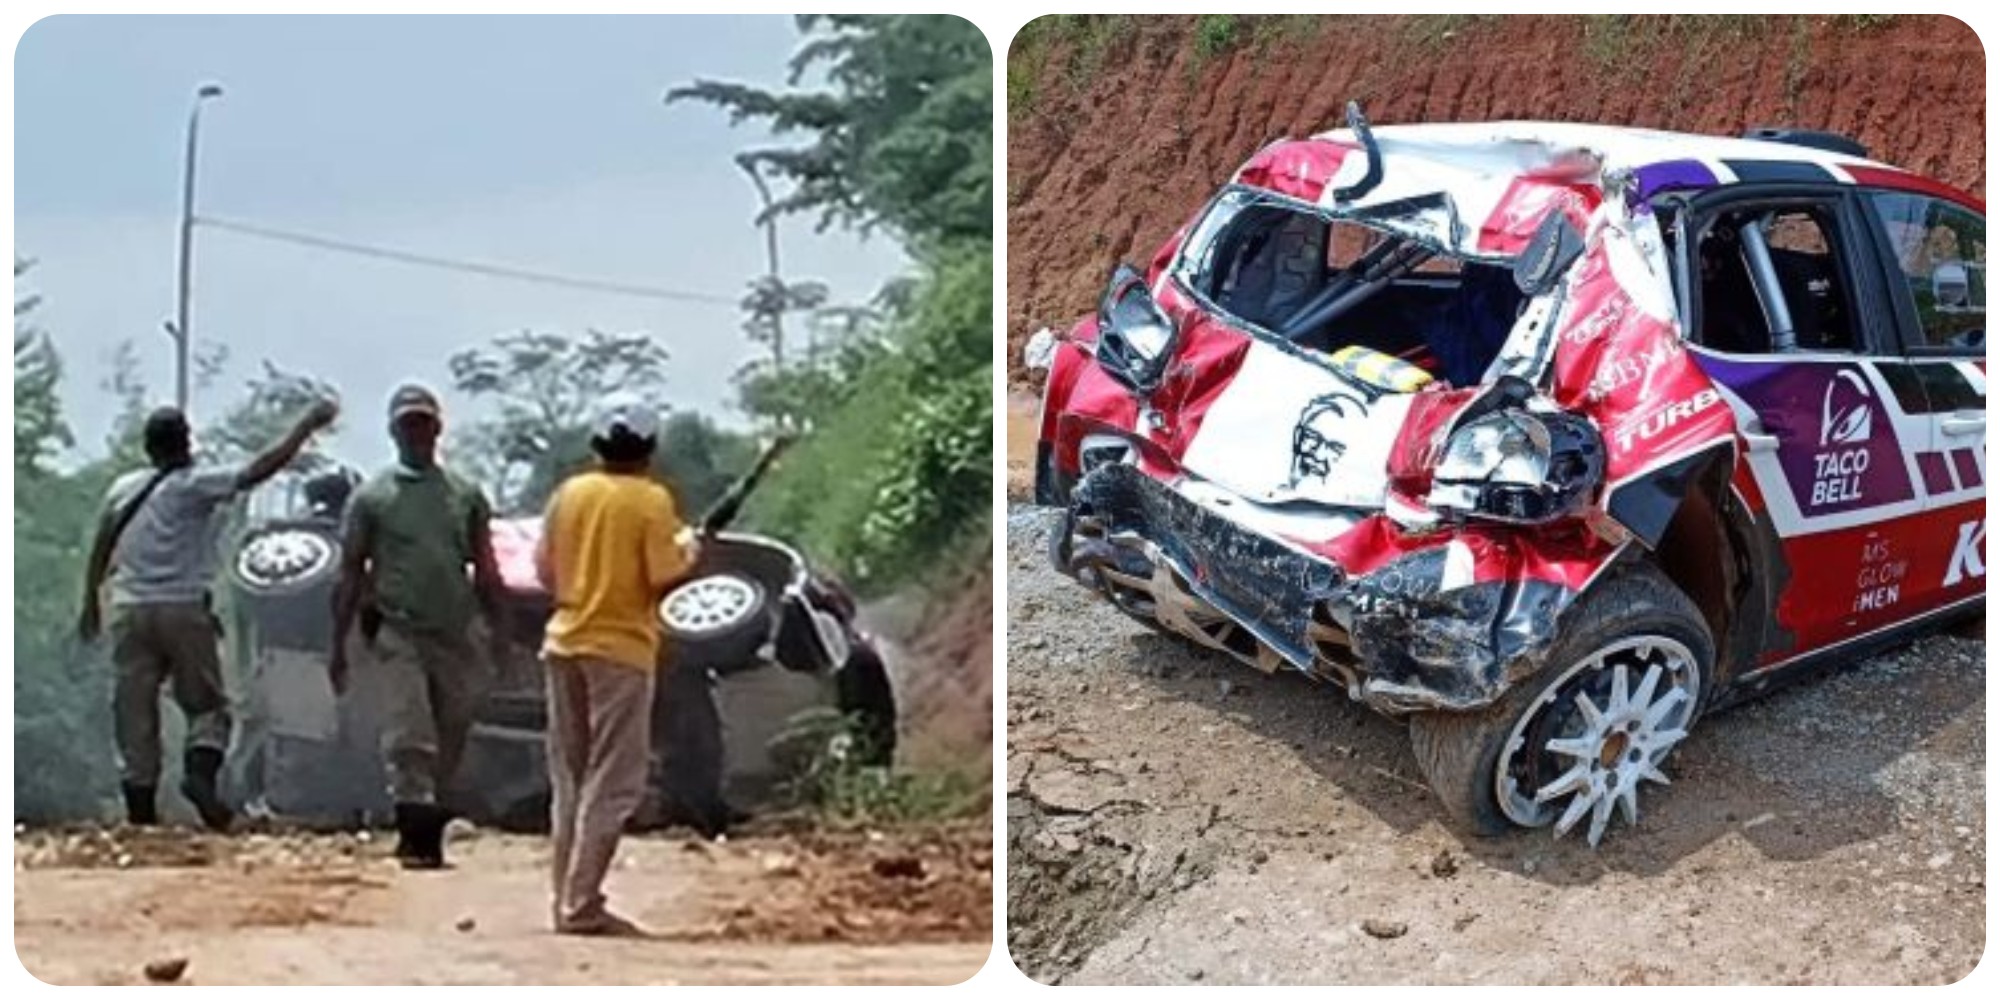 Ketua MPR RI Kecelakaan, Mobil Ringsek Cukup Parah